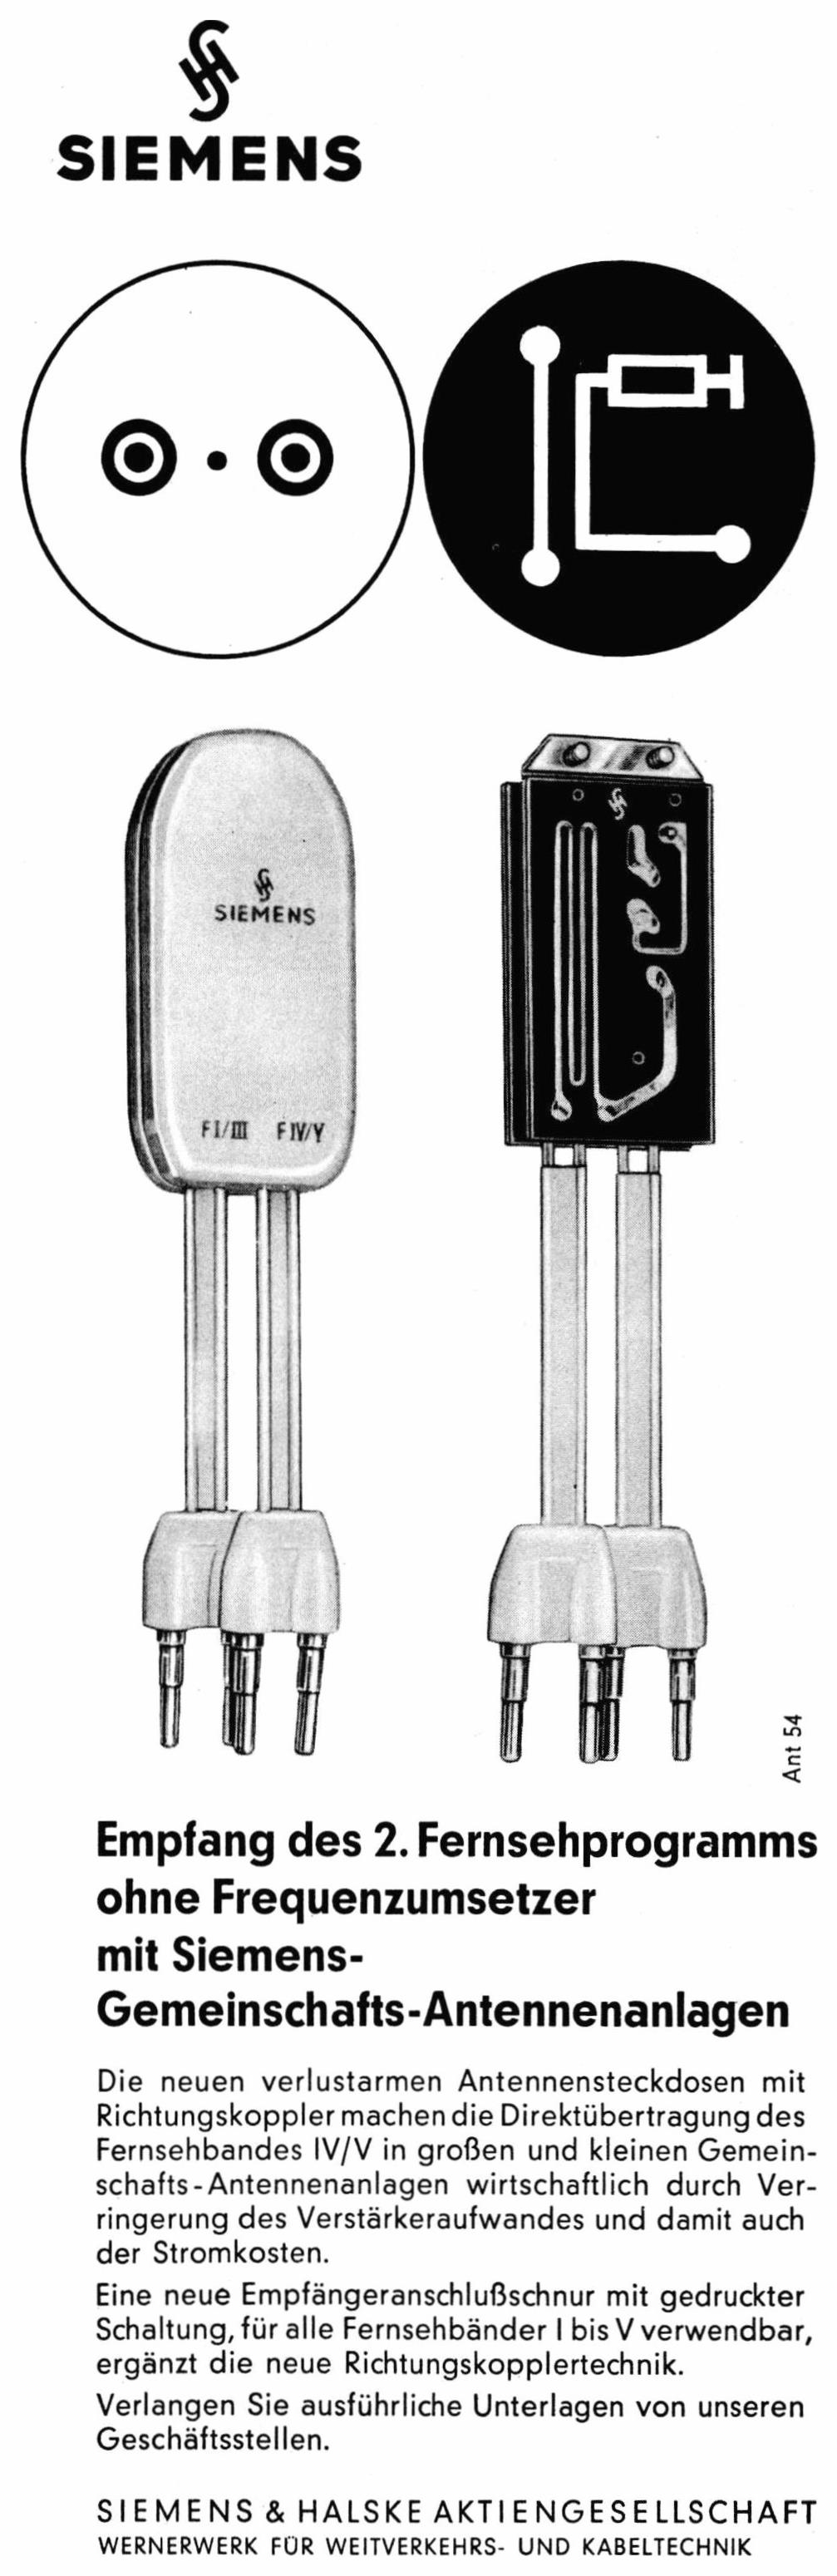 Siemens 1962 11.jpg